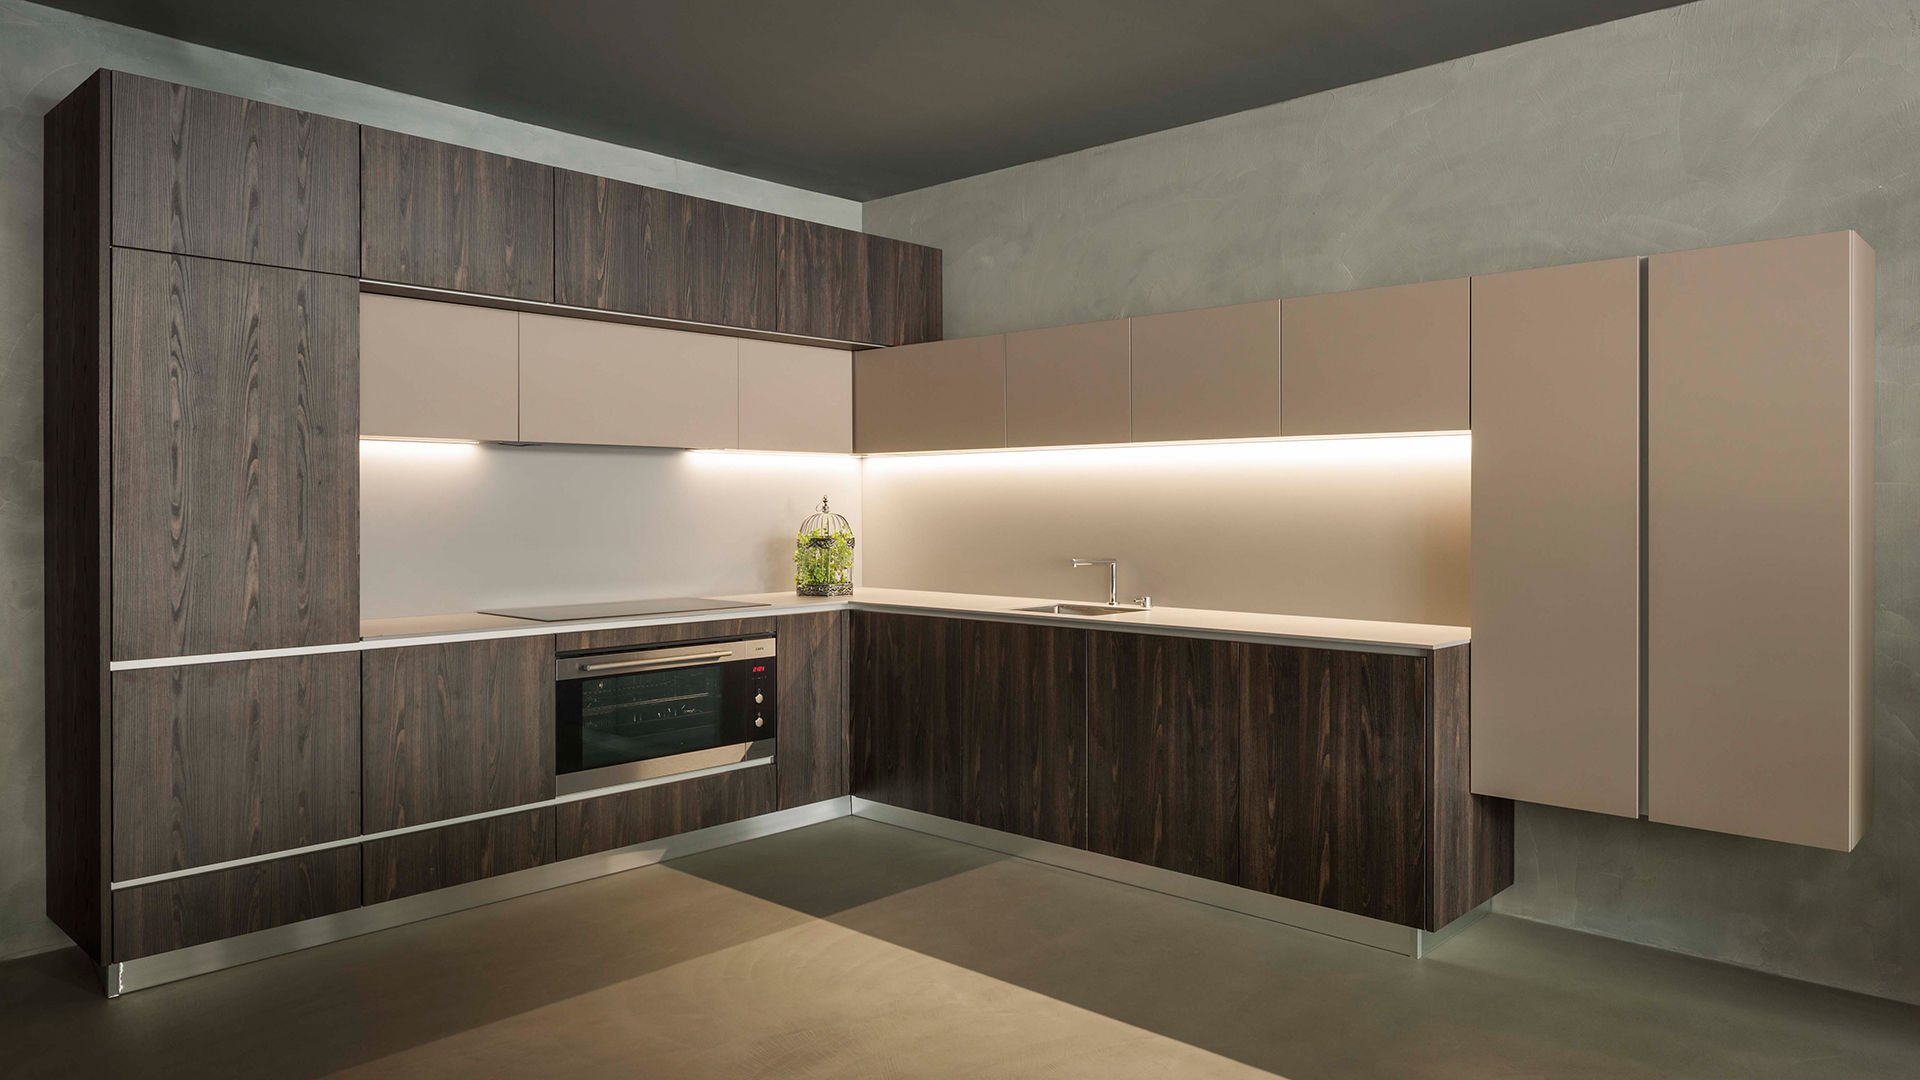 Linha Natur, dlcozinhas dlcozinhas Modern kitchen Engineered Wood Transparent Storage